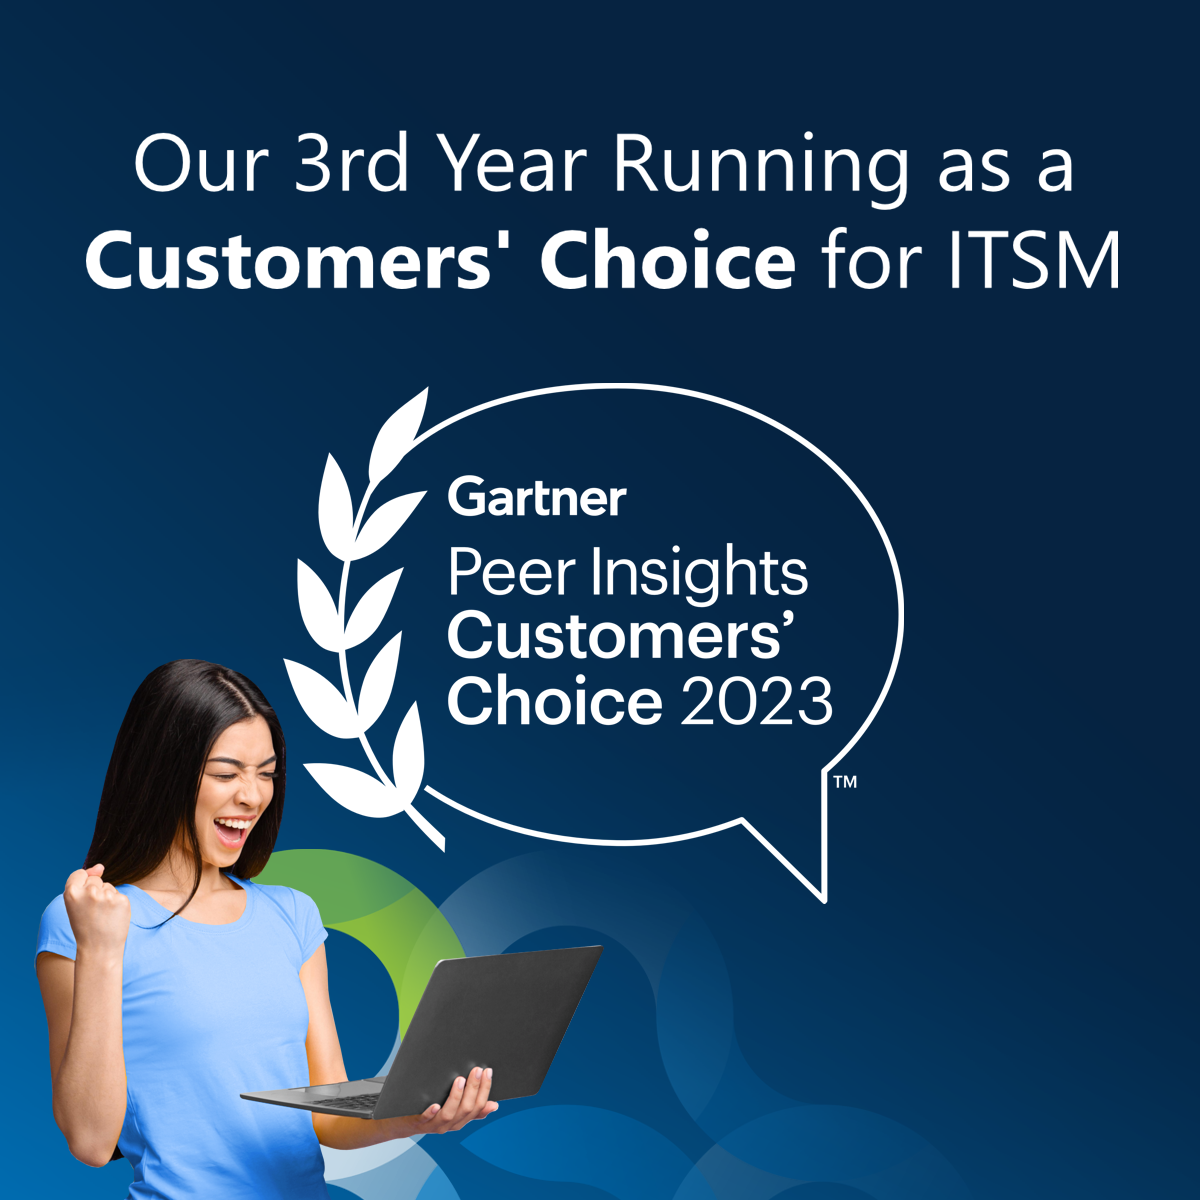 4me named "Customers' Choice" in Gartner Peer Insights 2023